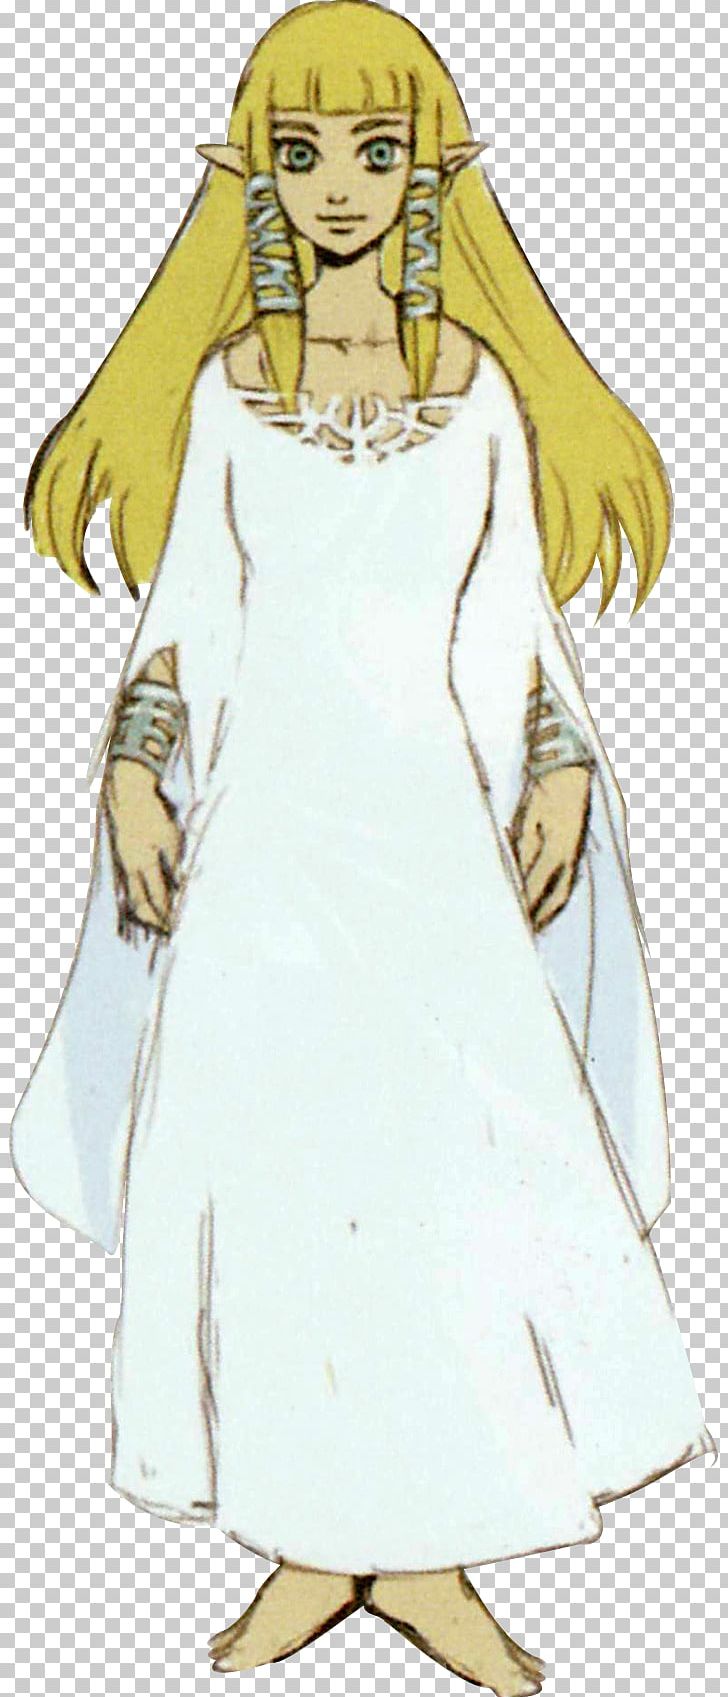 The Legend Of Zelda: Skyward Sword Princess Zelda The Legend Of Zelda: Ocarina Of Time Link PNG, Clipart, Angel, Anime, Arm, Art, Fashion Design Free PNG Download